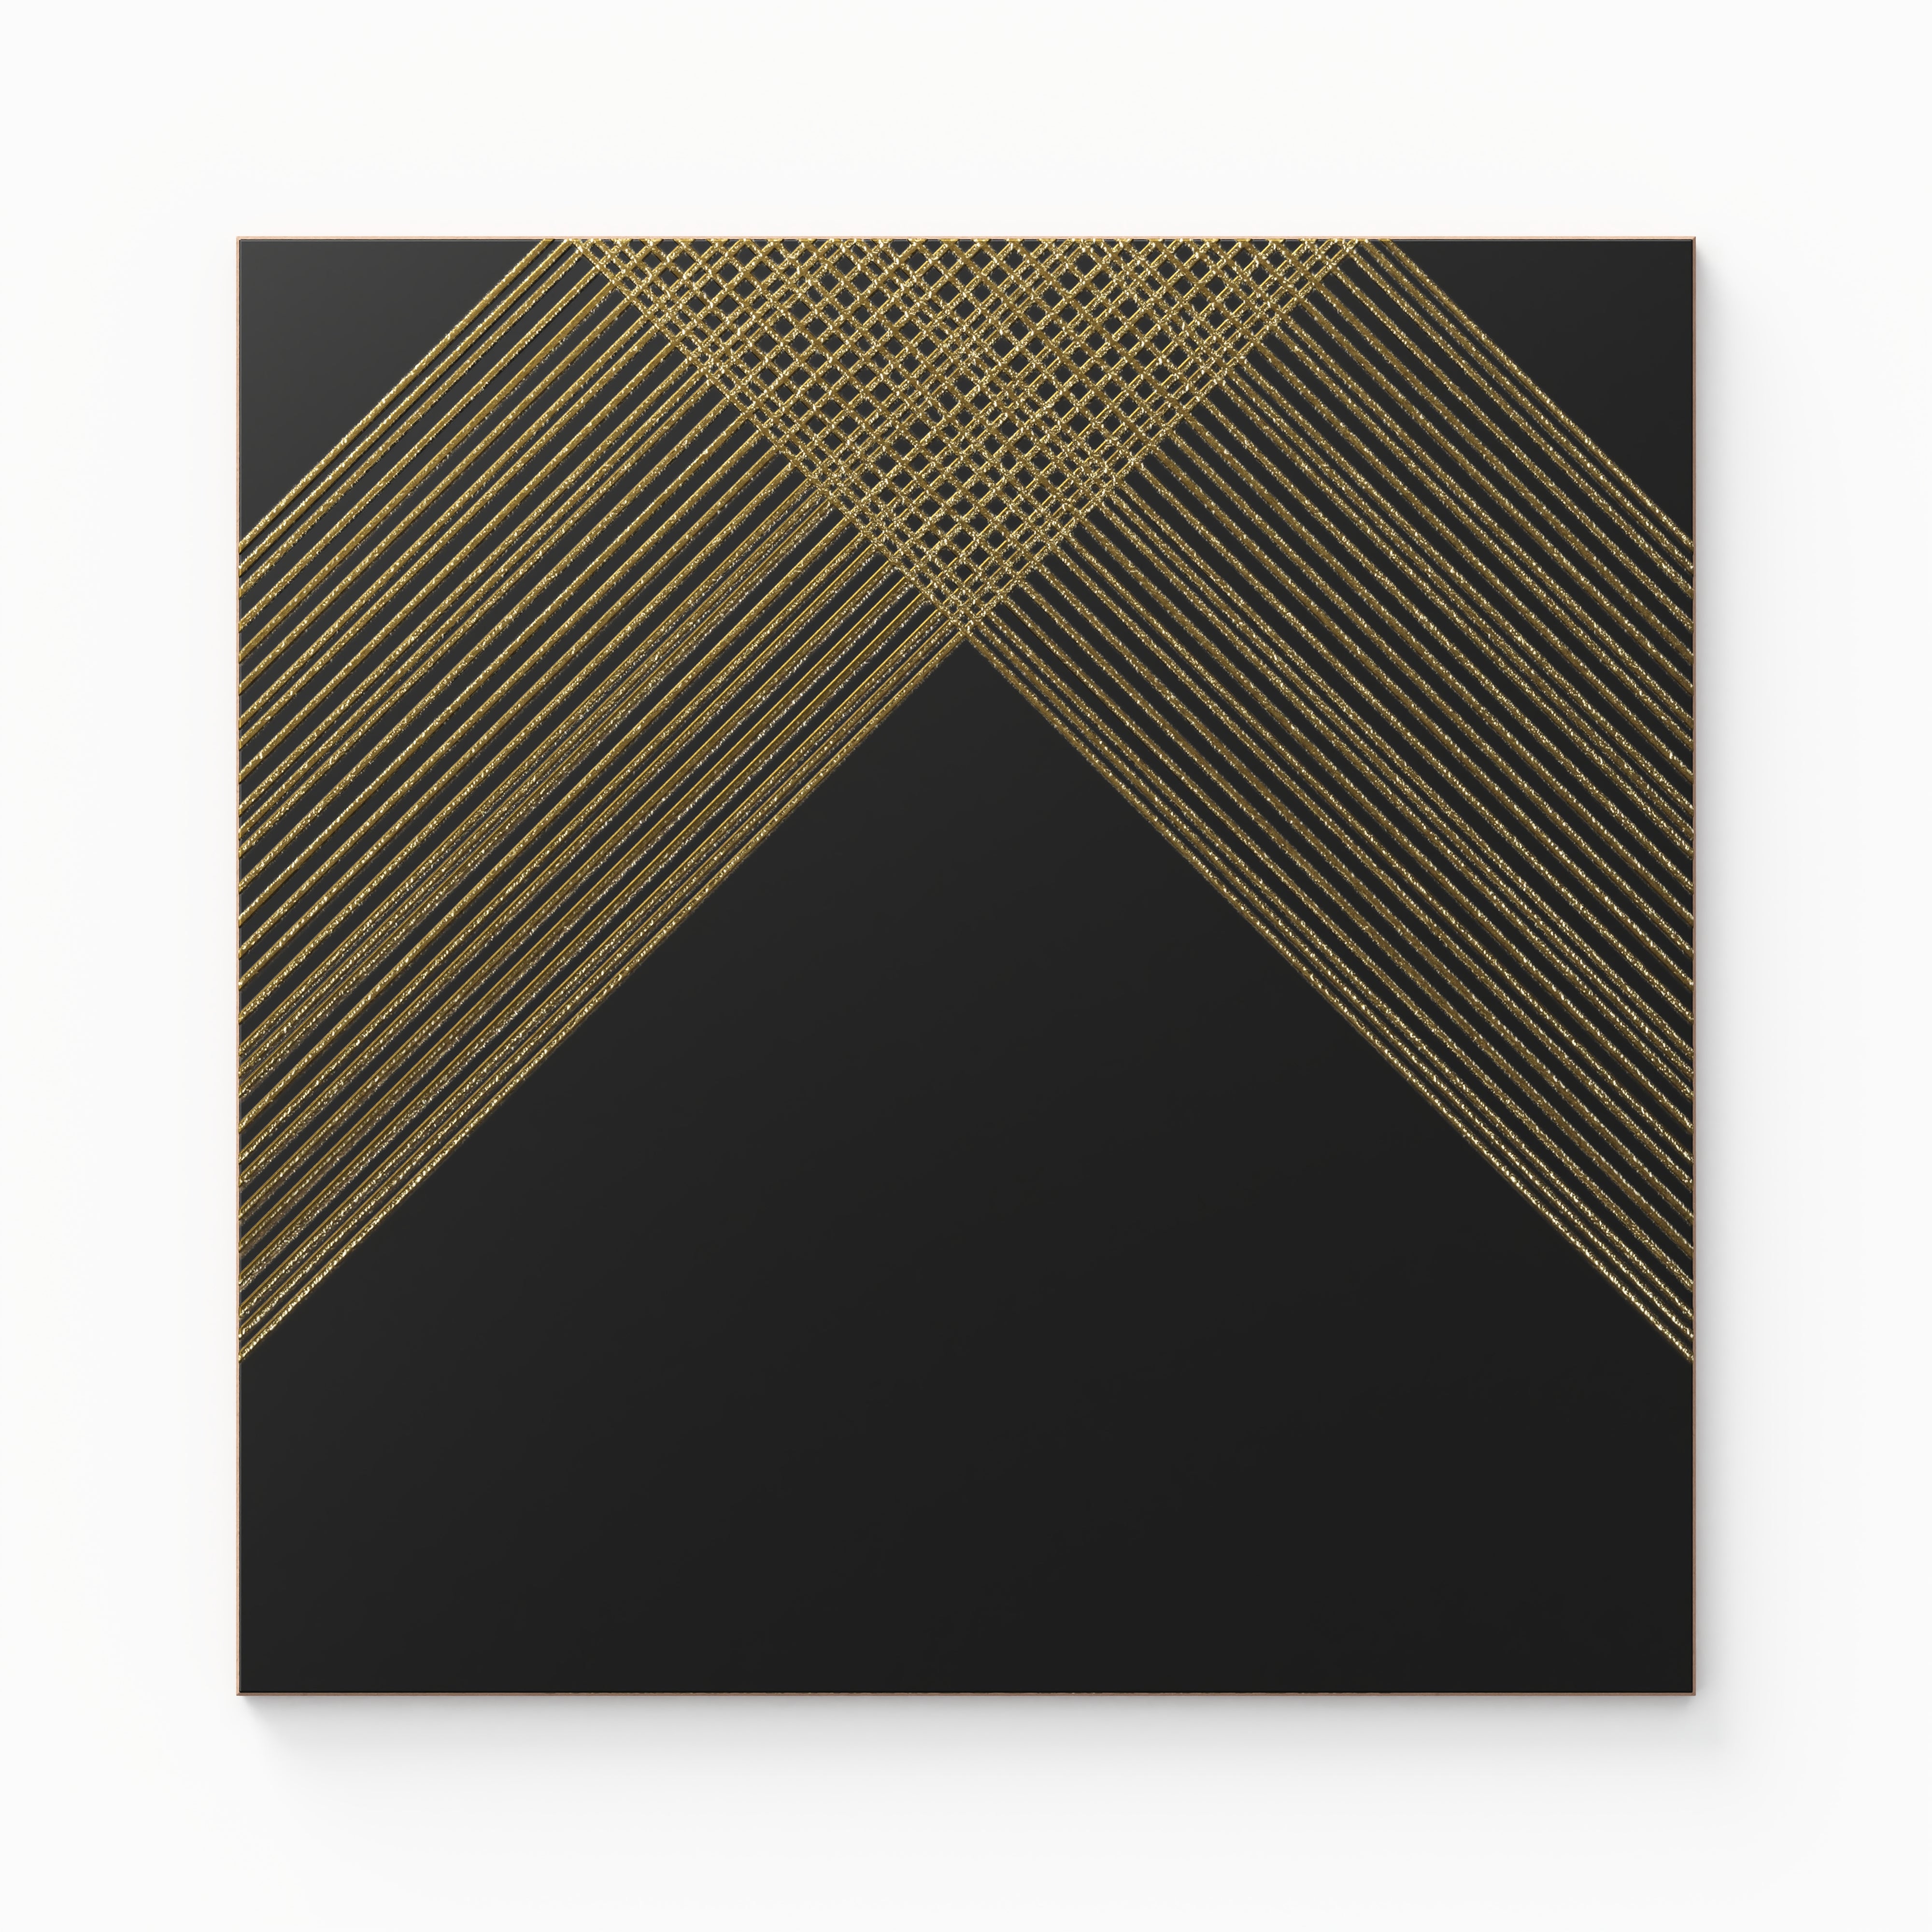 Estelle 12x12 Satin Ceramic Tile in Deco 2 Black Gold Sample